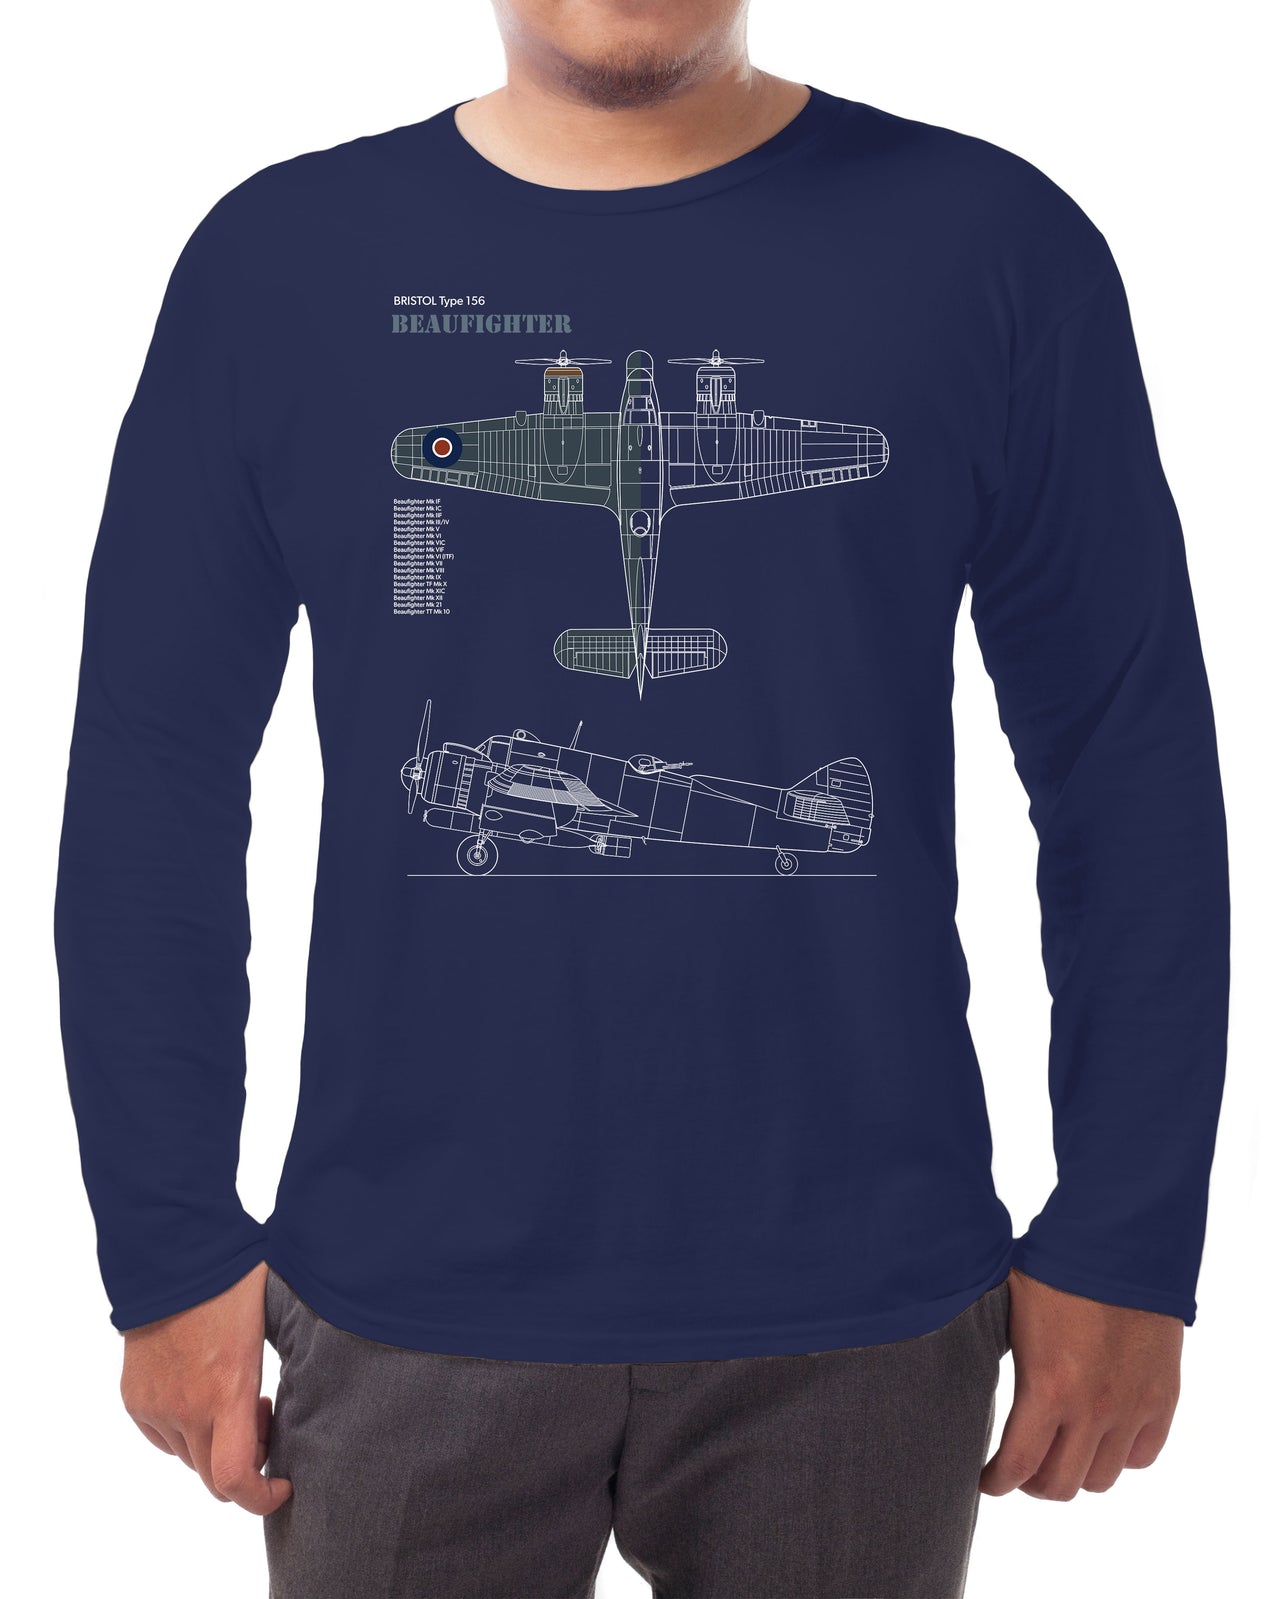 Beaufighter - Long-sleeve T-shirt